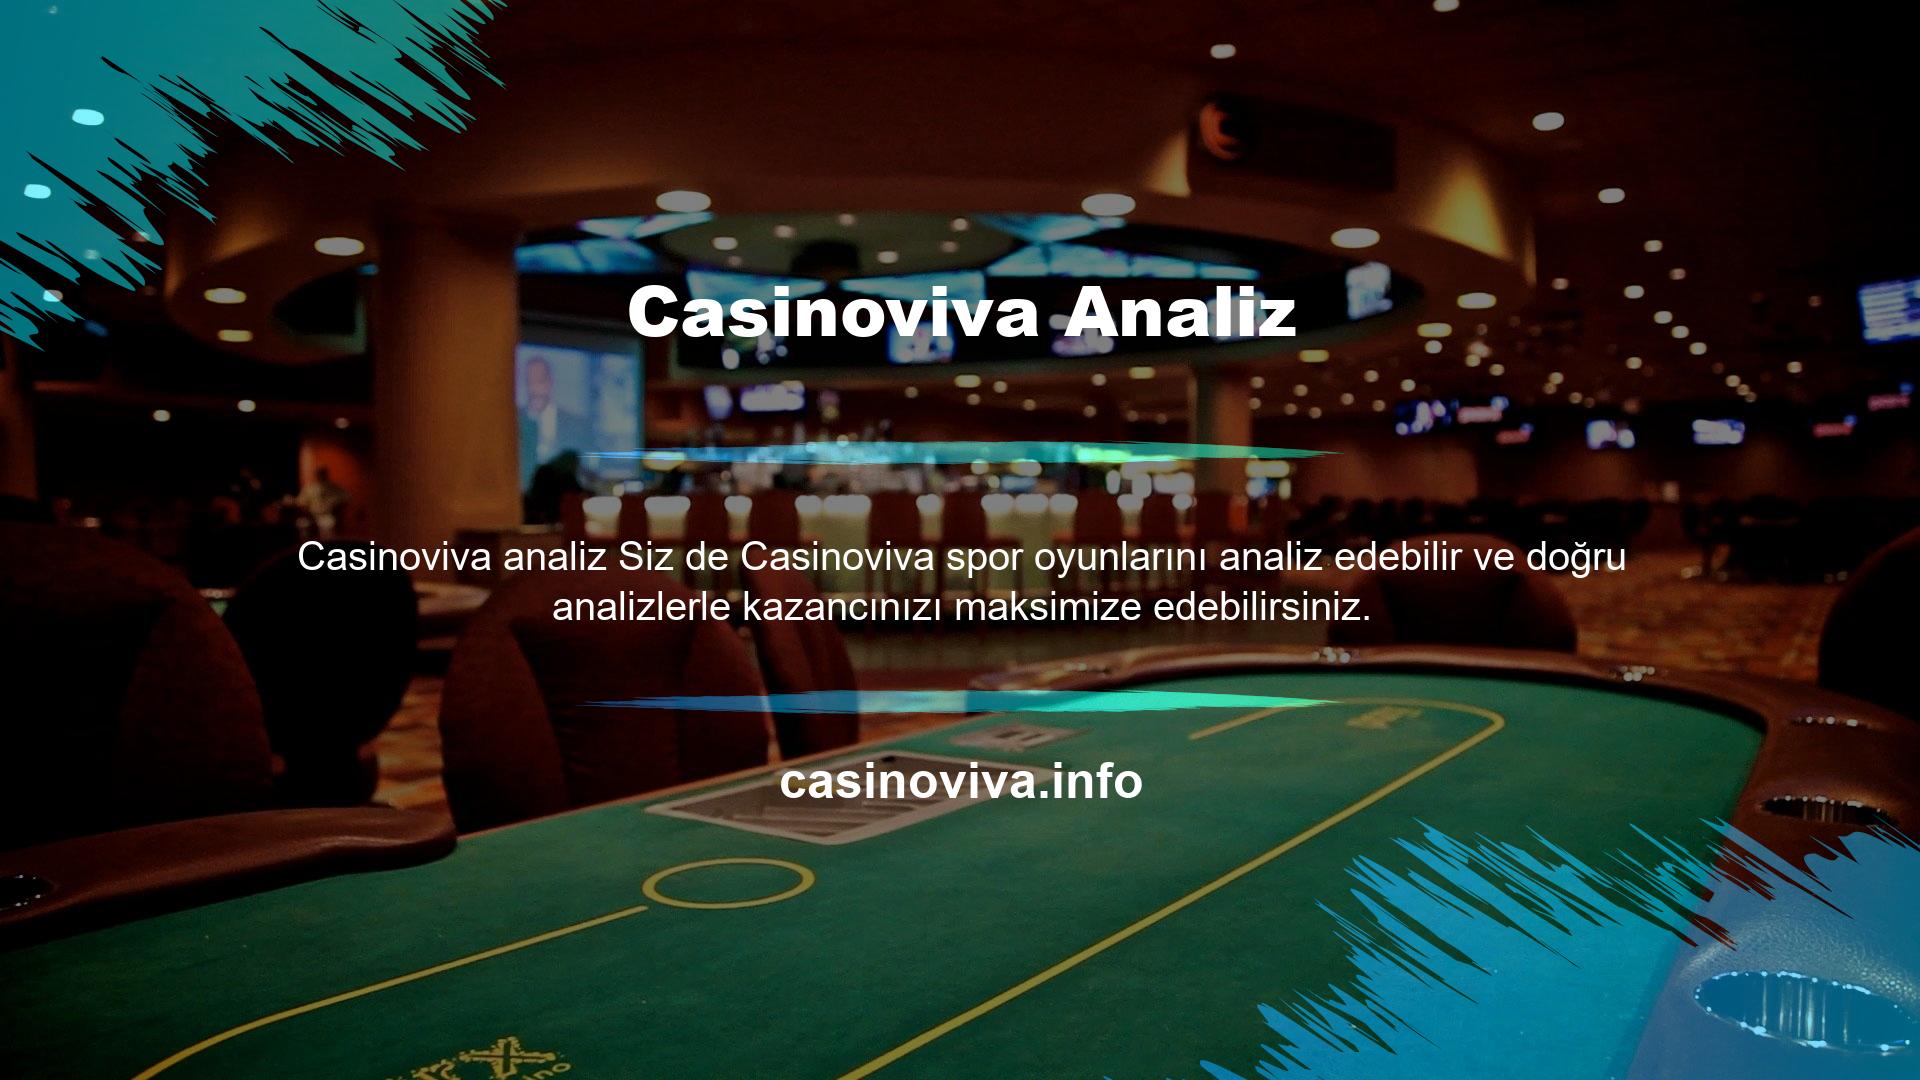 Casinoviva Analiz